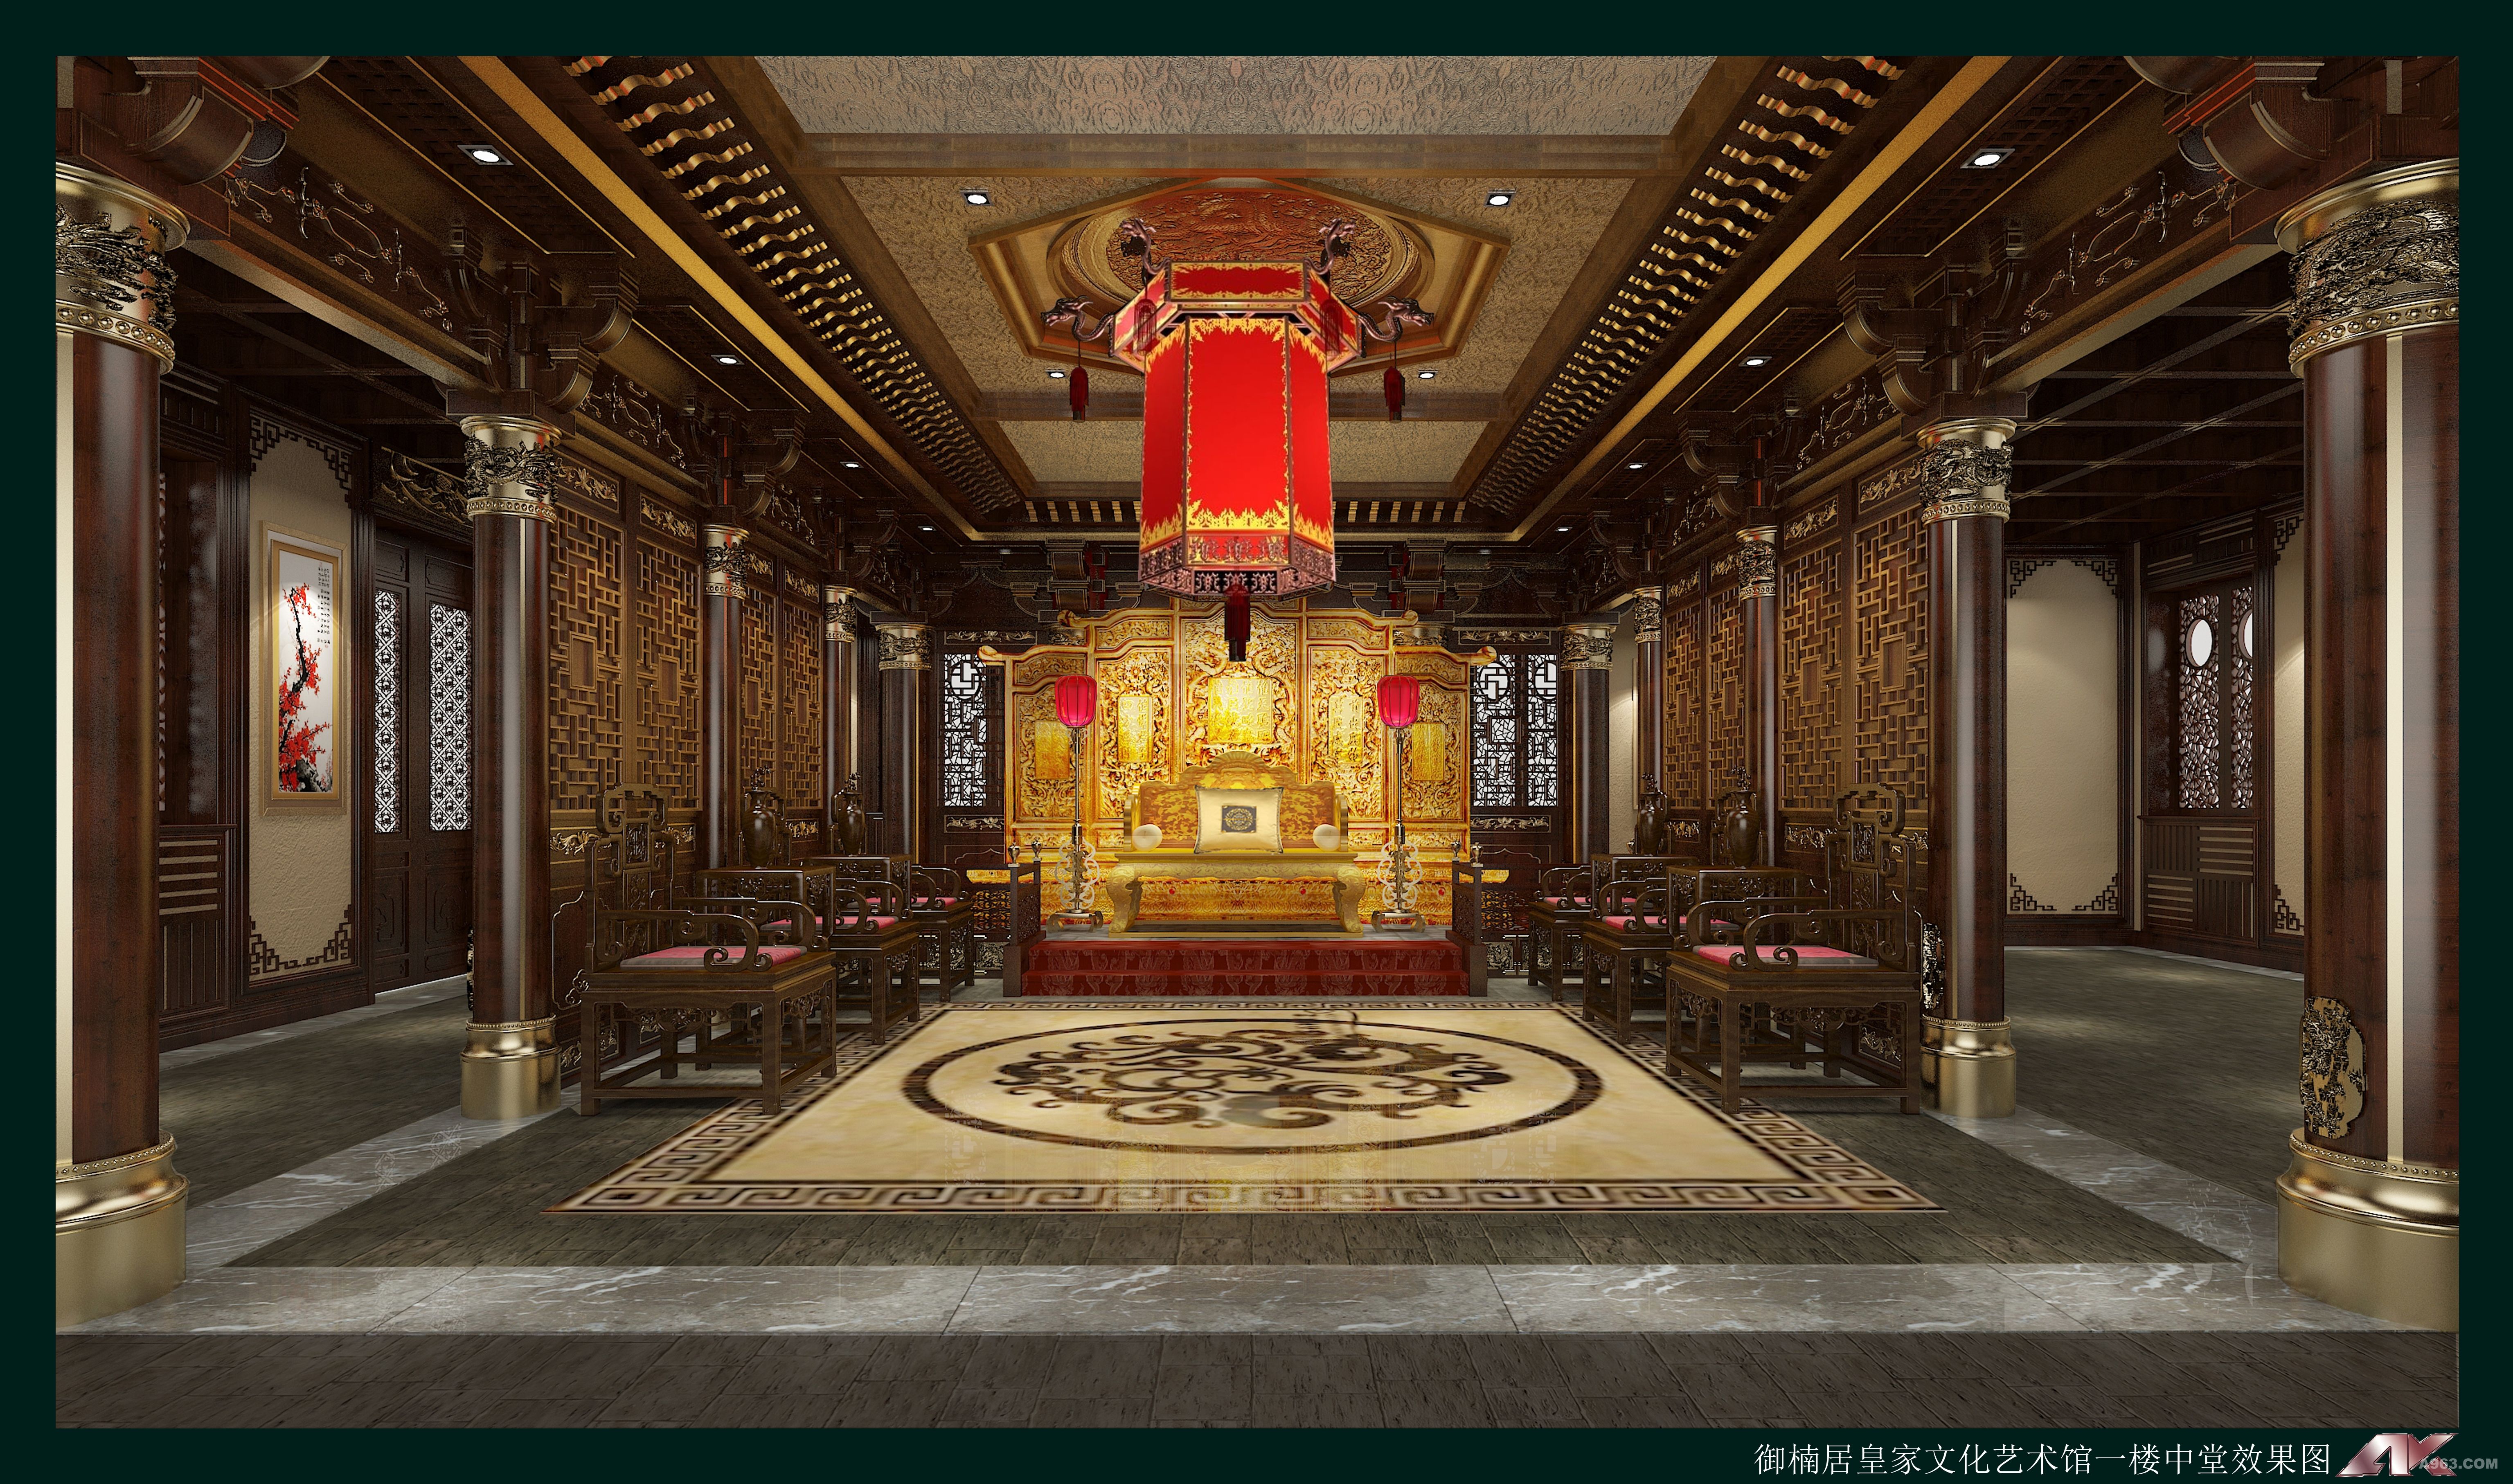 中式古典文化会馆前厅气势非凡，犹如古代皇宫殿堂一般，色调大气富贵，暗淡与闪耀相互搭配之中显得低调而不张扬。中式古典文化会馆所要表达的还是中国传统文化的一种精髓，为大家展示千百年来传承文明的宝贵，而此处以中式古典建筑的设计手法来建造的文化会馆挣是中式文化的一种完美体现。